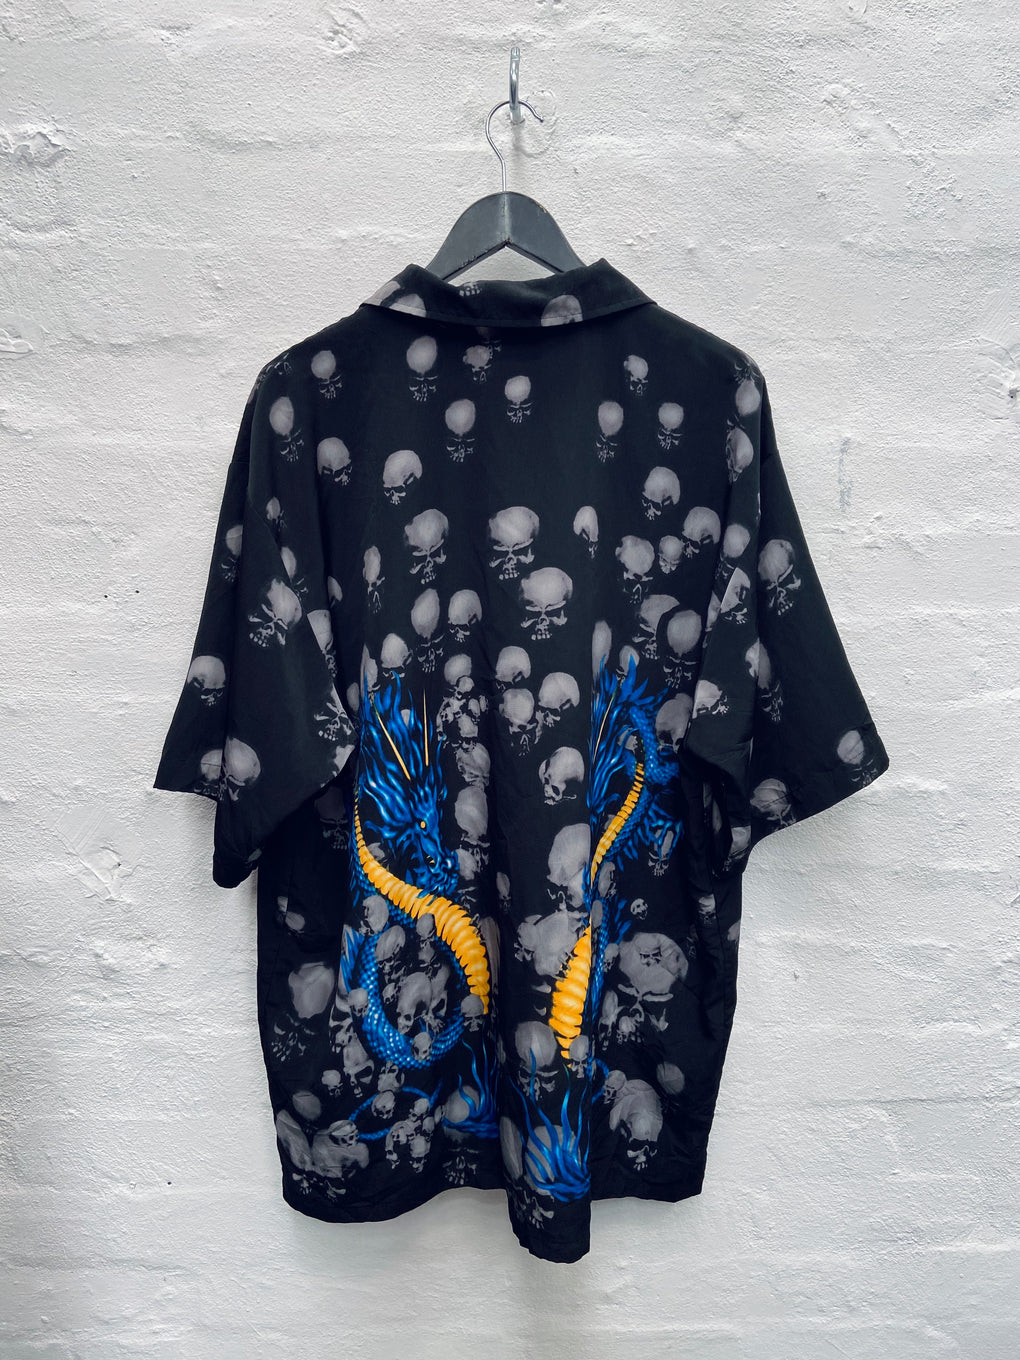 Skullamine Shirt (XXL)